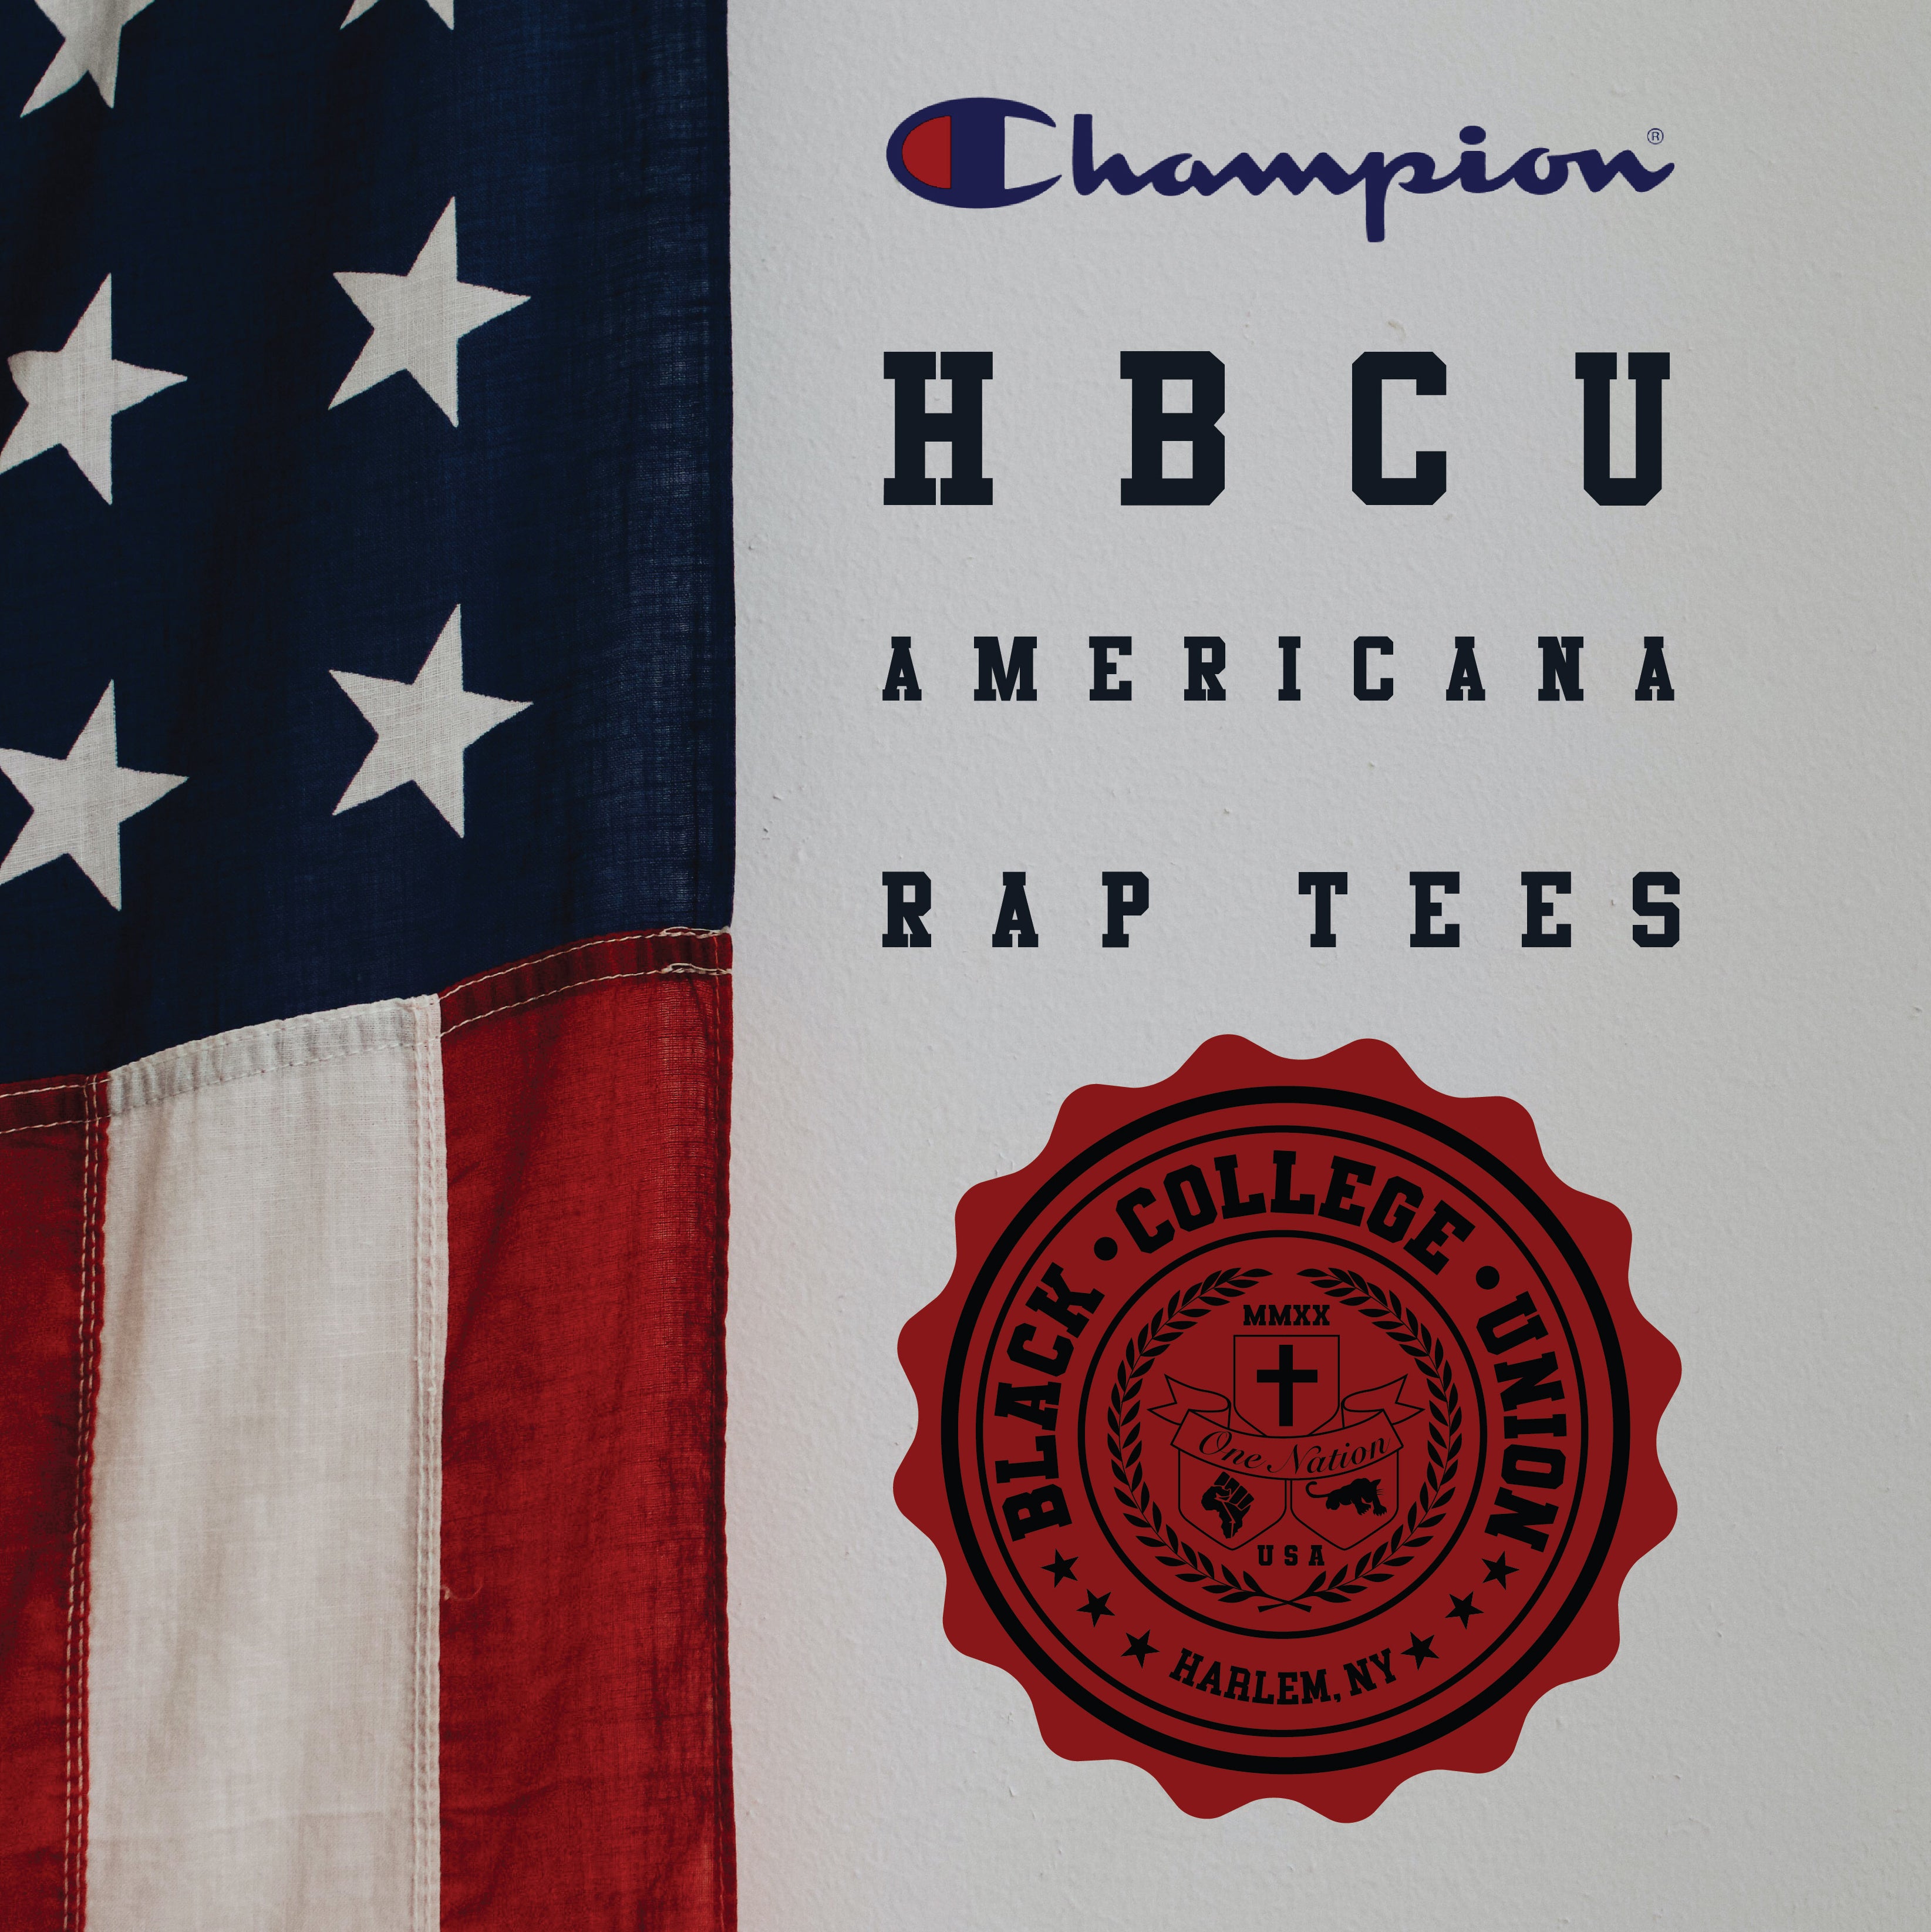 BCU X Champion Original HBCU Americana Rap Tee - Central State